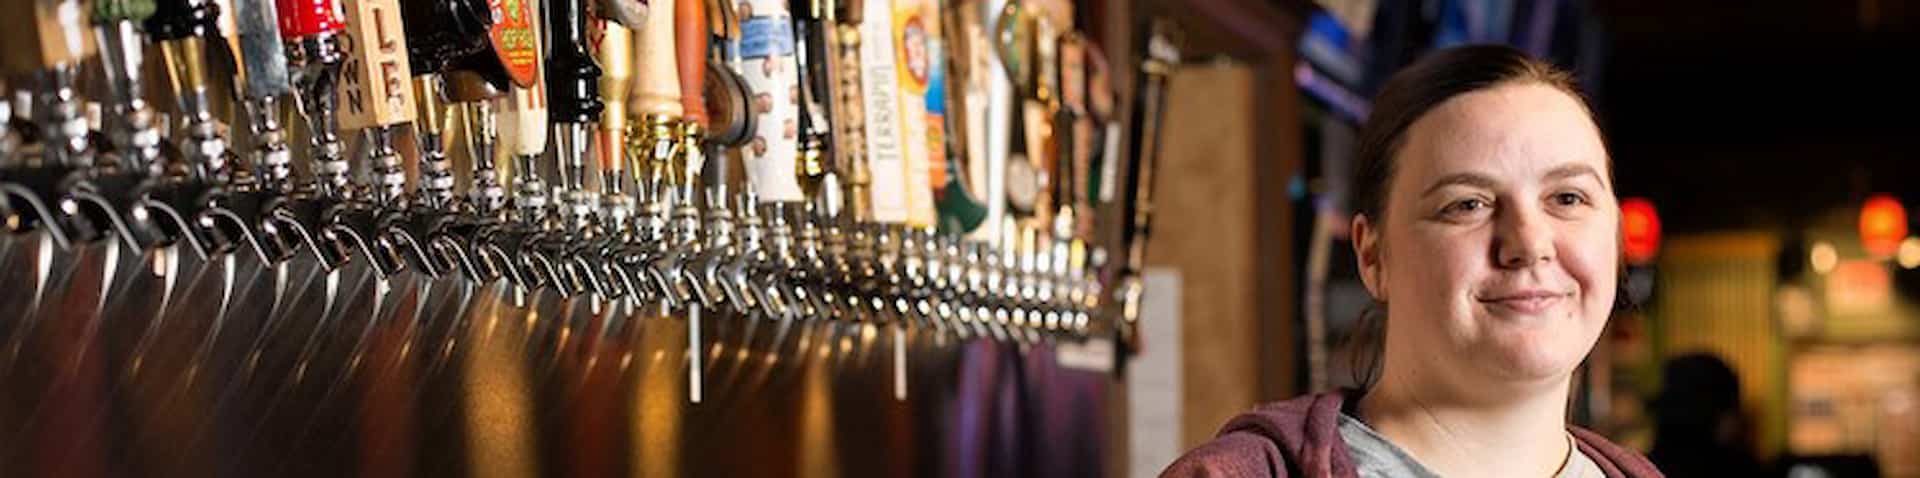 bar tender standing in front of beer taps